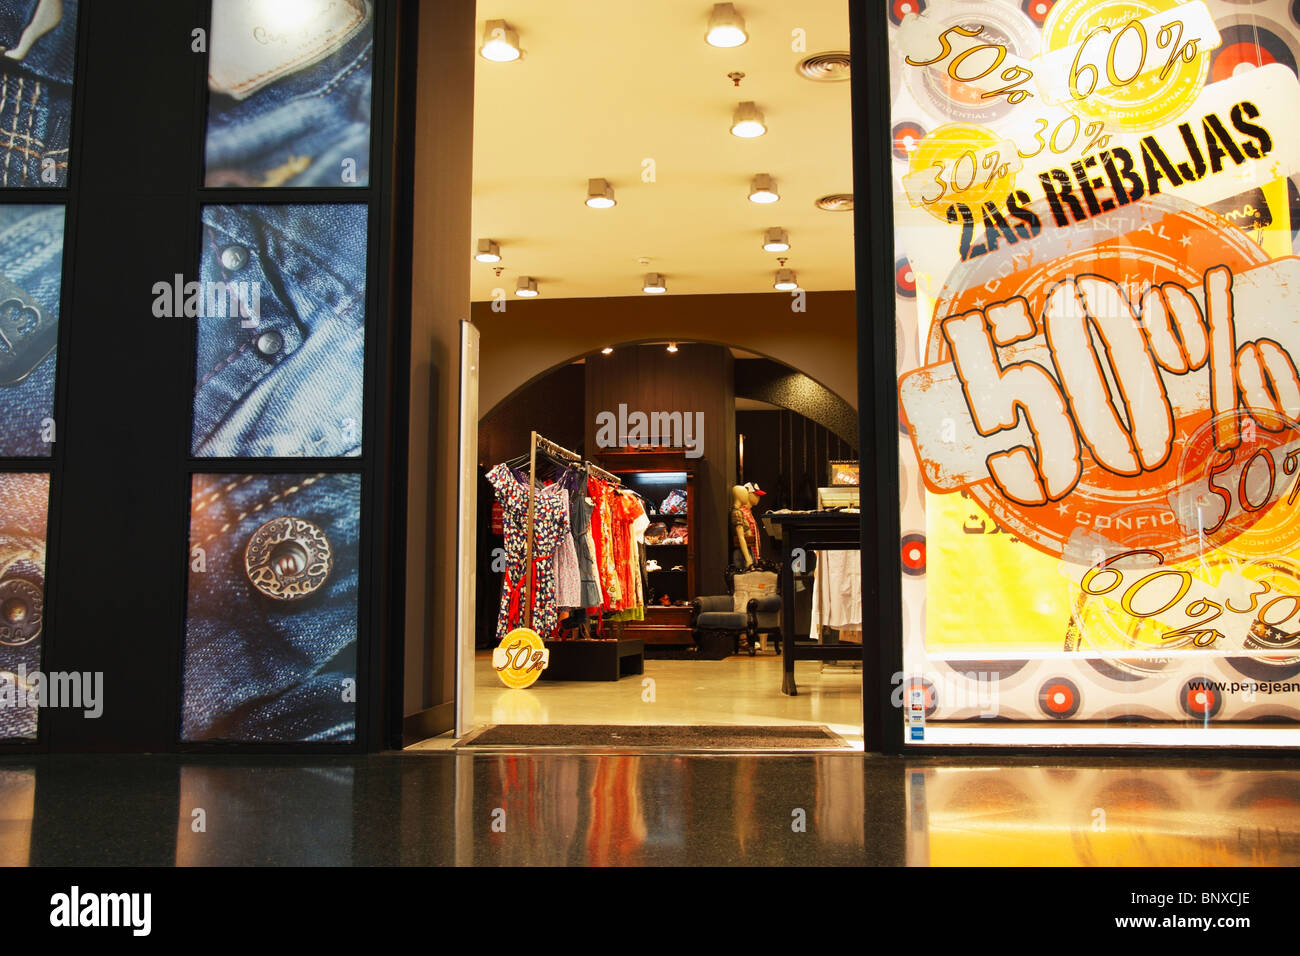 Pepe Jeans magasin en Espagne à vendre ouvrir une fenêtre. Rebajas est  vente en espagnol Photo Stock - Alamy